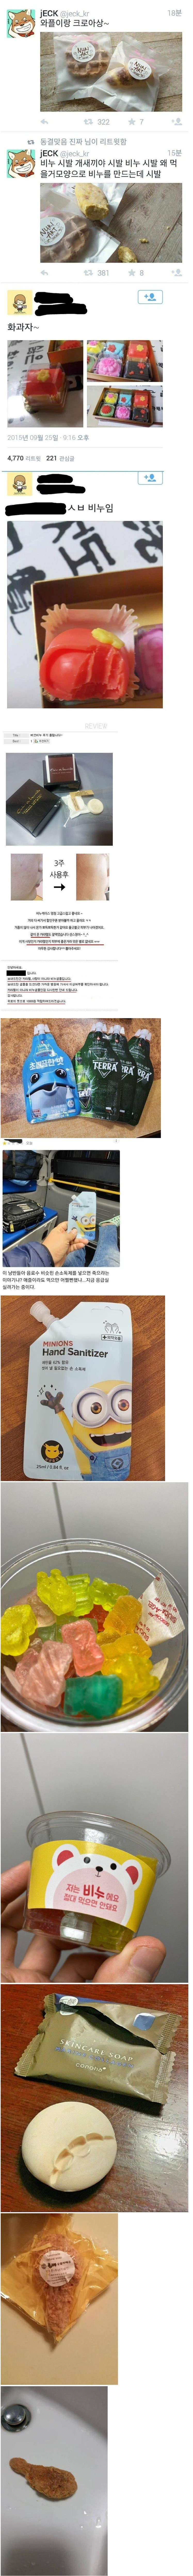 韓国の暗殺道具